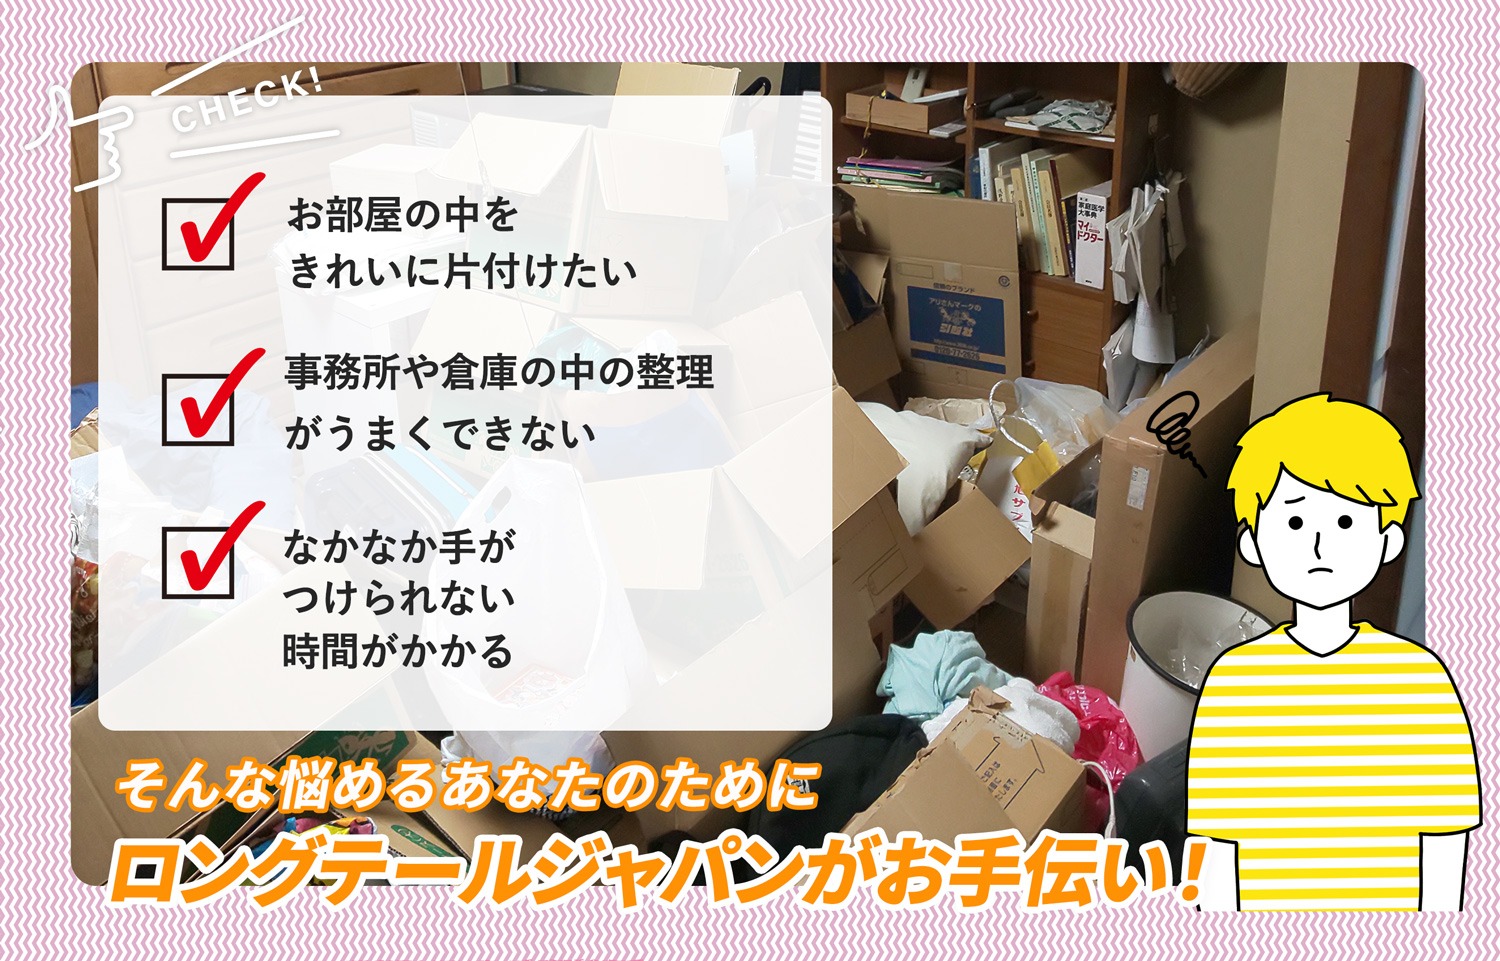 東筑摩郡朝日村でお部屋の中から店舗、事務所、倉庫まで自分達で片付けられない場合はお部屋の片付け隊がやらせていただきます。